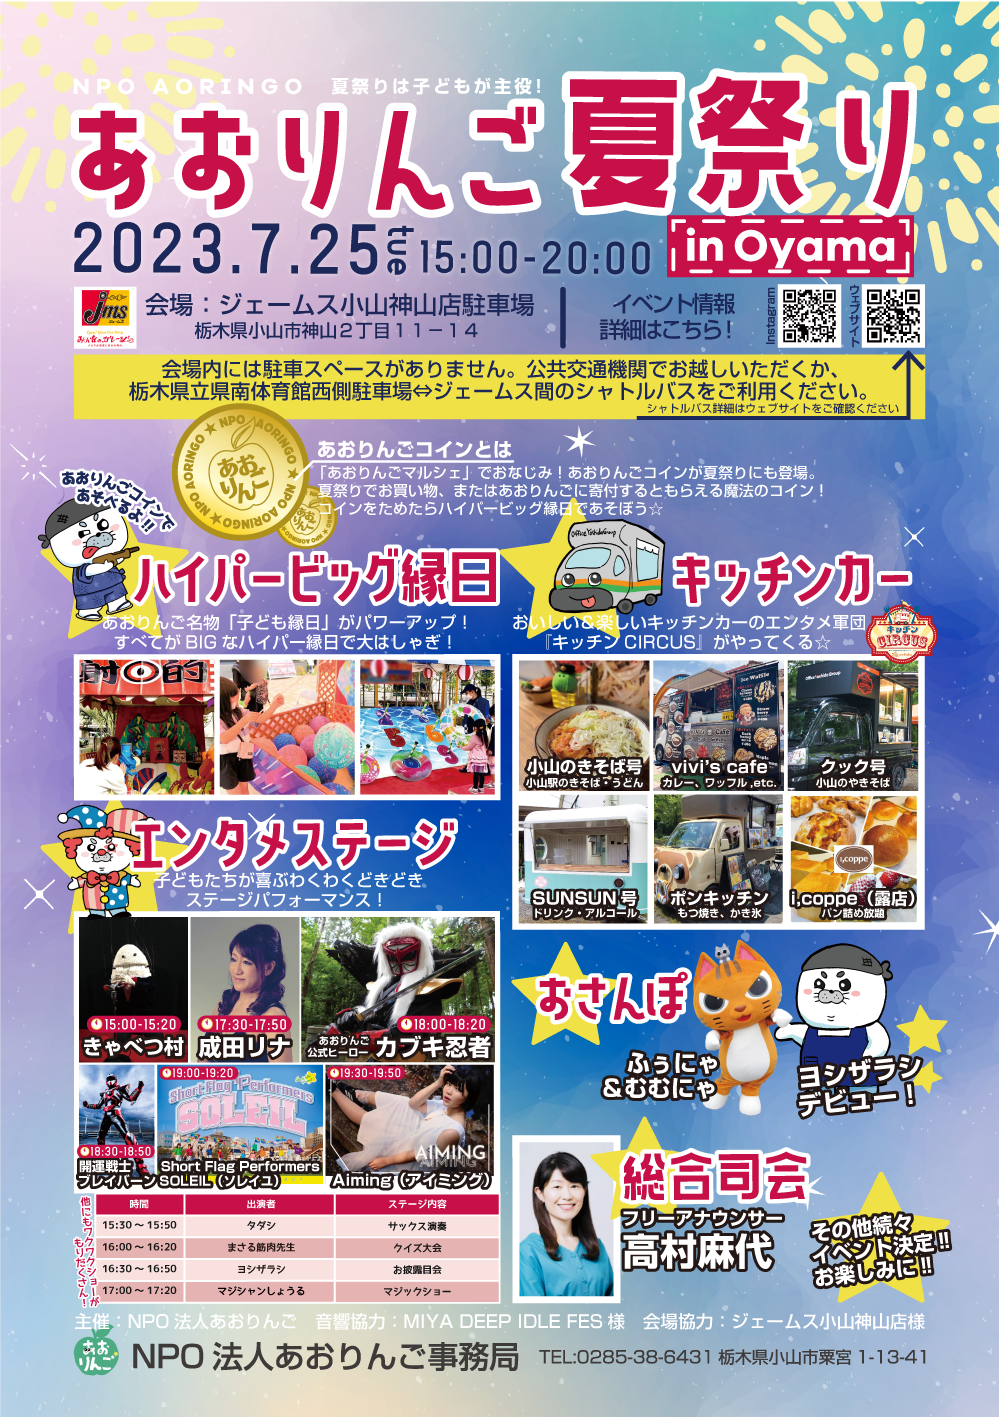 2023年7月25日(火)】あおりんご夏祭り in Oyama イベント情報 - 特定非 